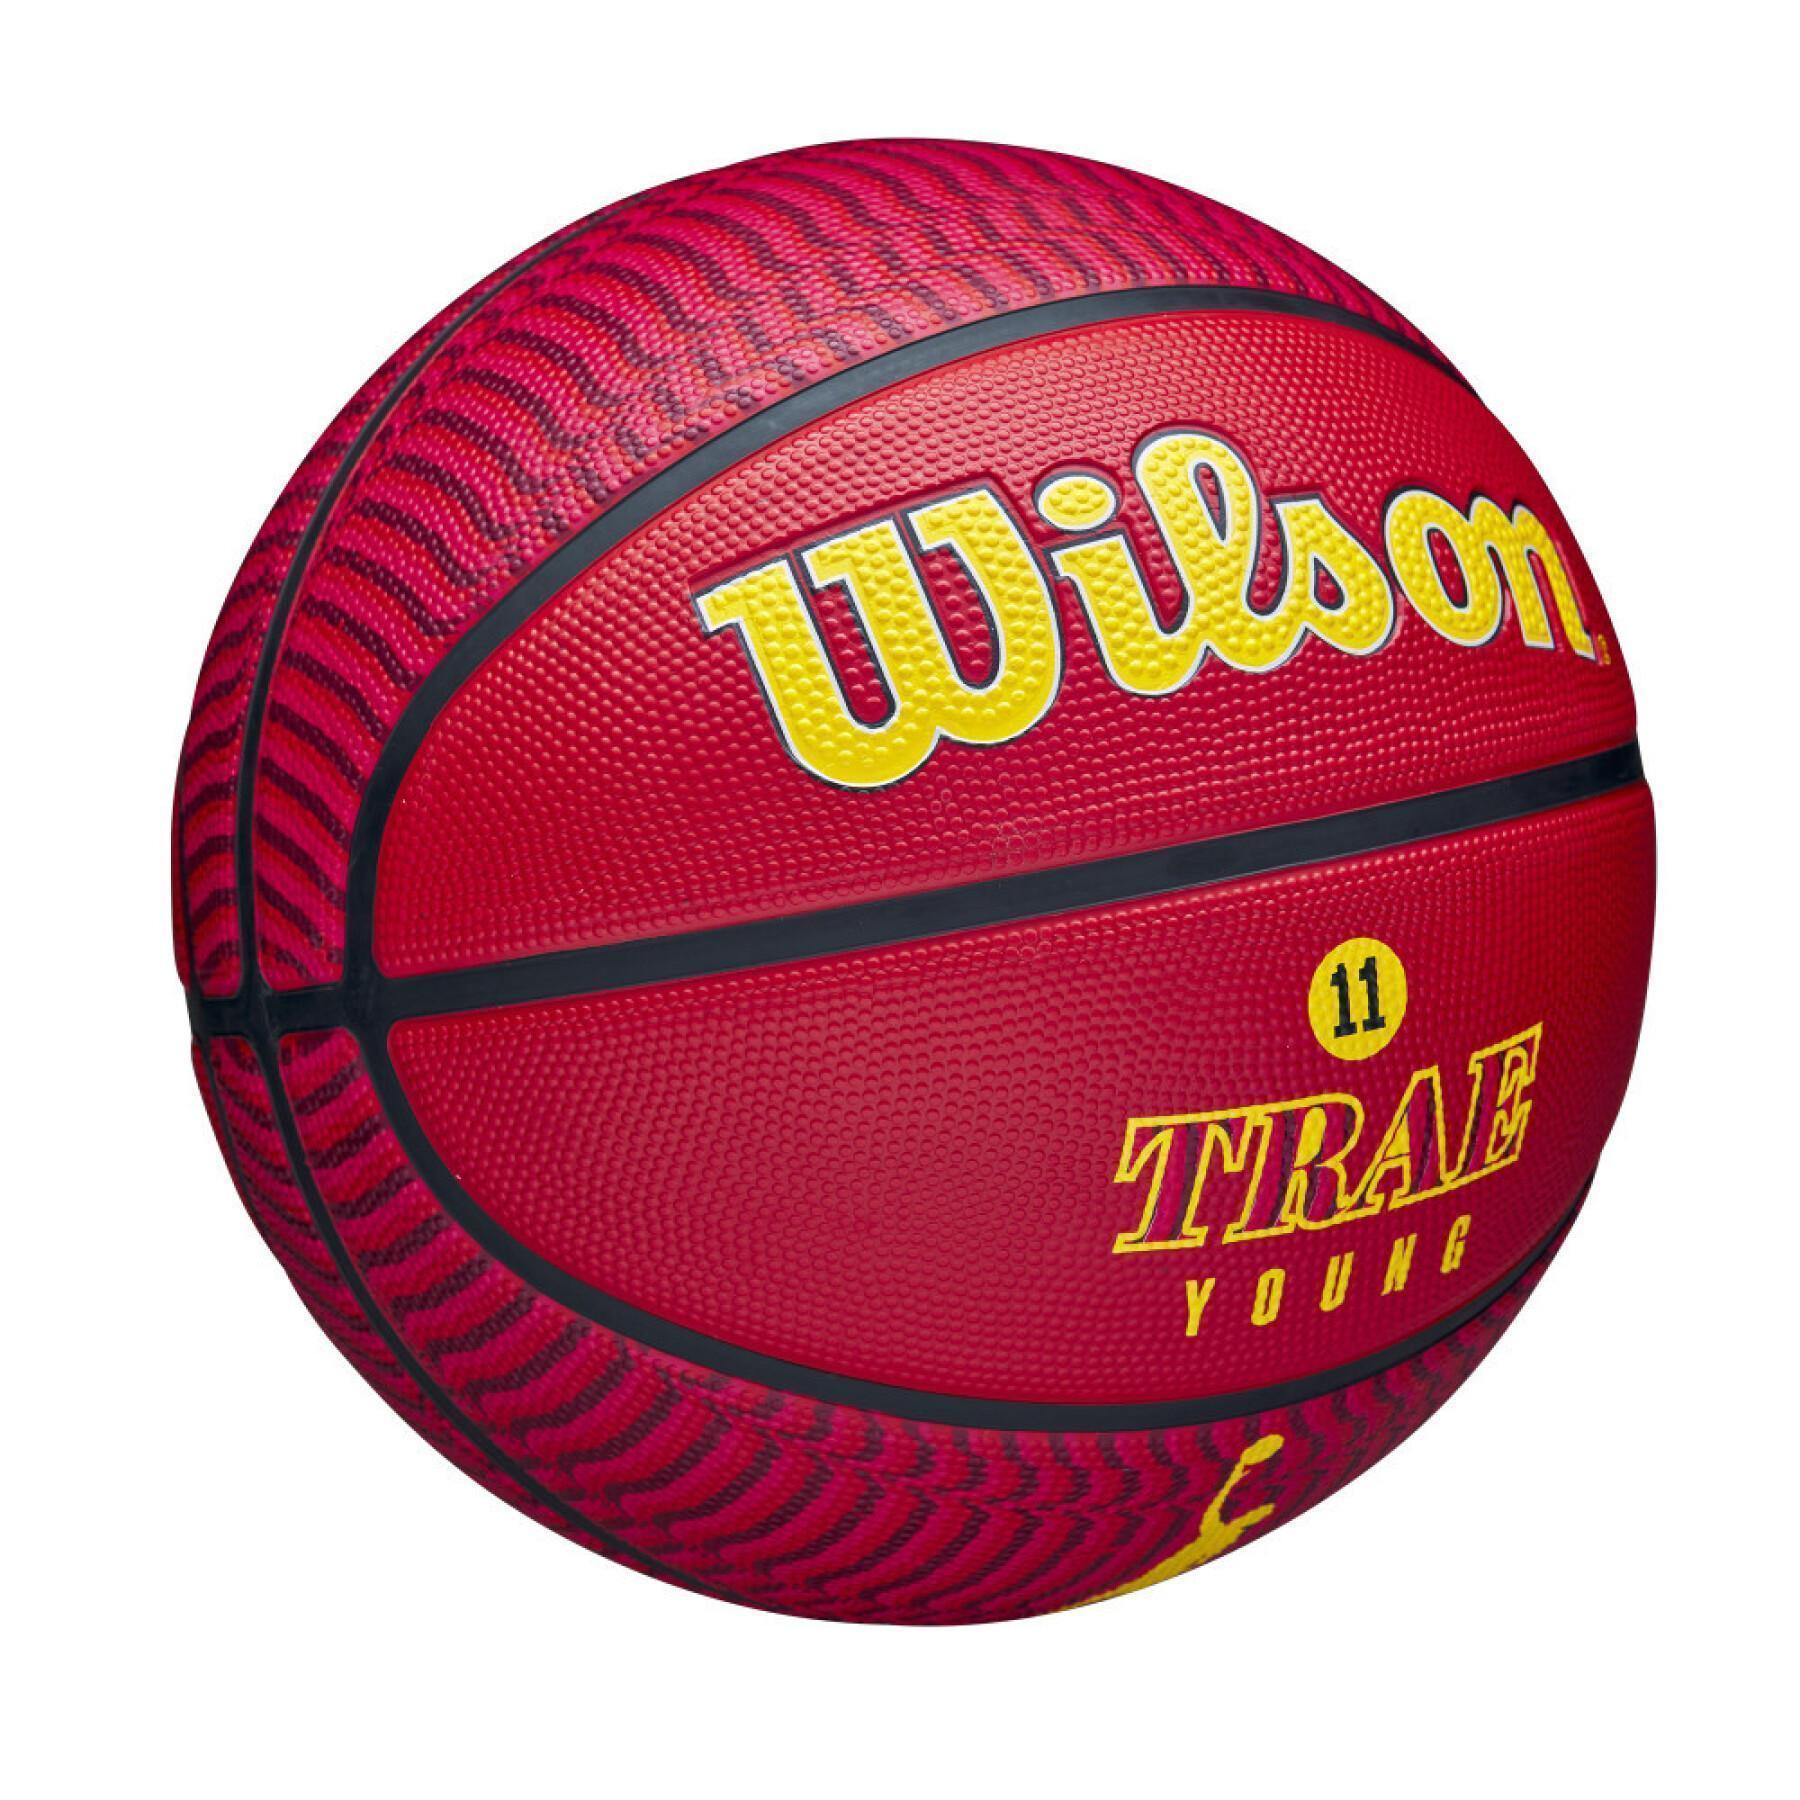 Ballon Wilson Trae Young